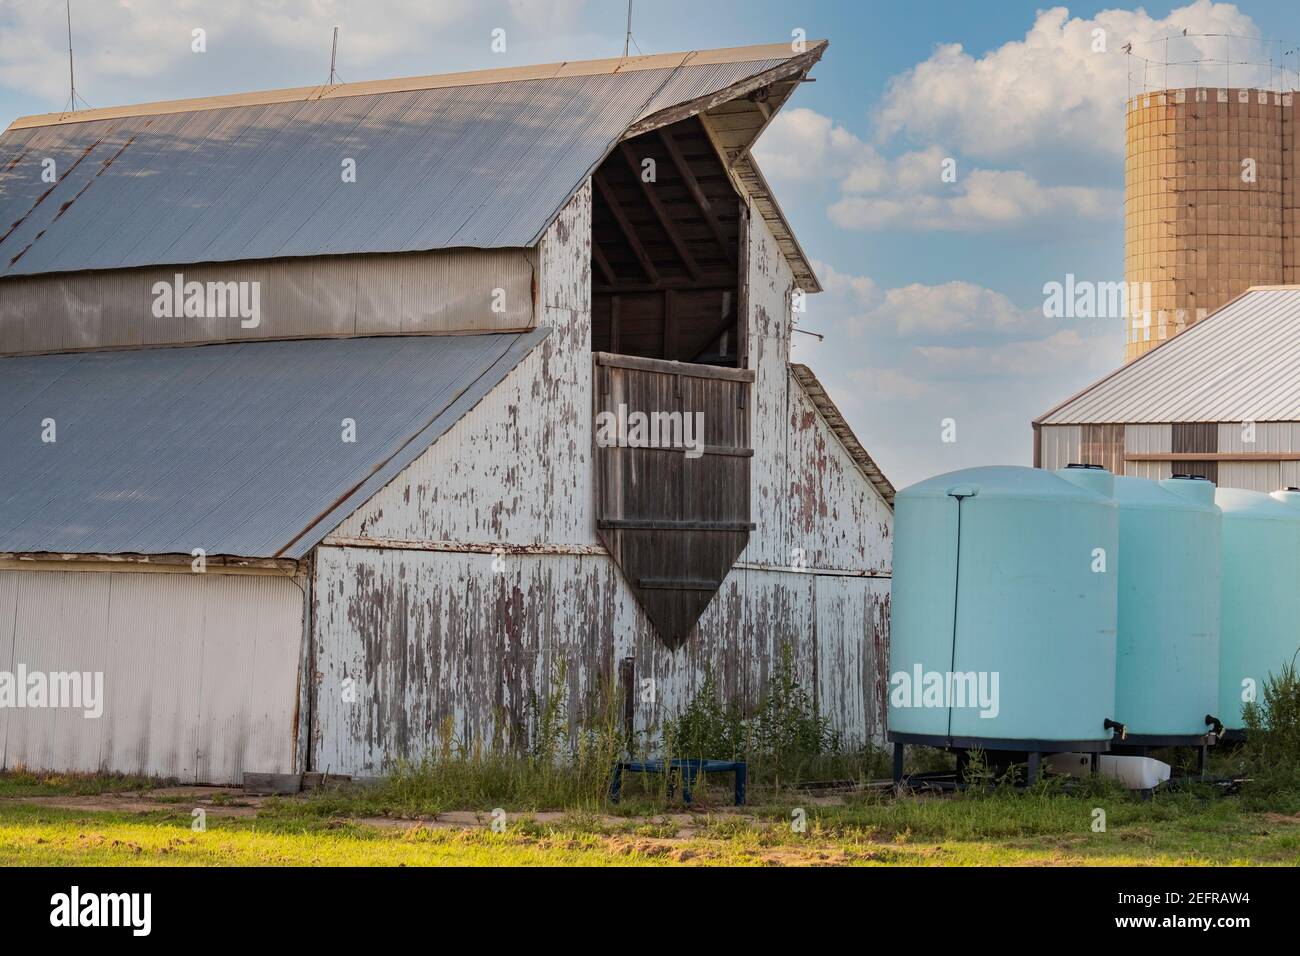 Fienile americano con vernice bianca e tetto in stagno. Serbatoi di stoccaggio, un silo, e la costruzione in un cortile. STATI UNITI. Foto Stock